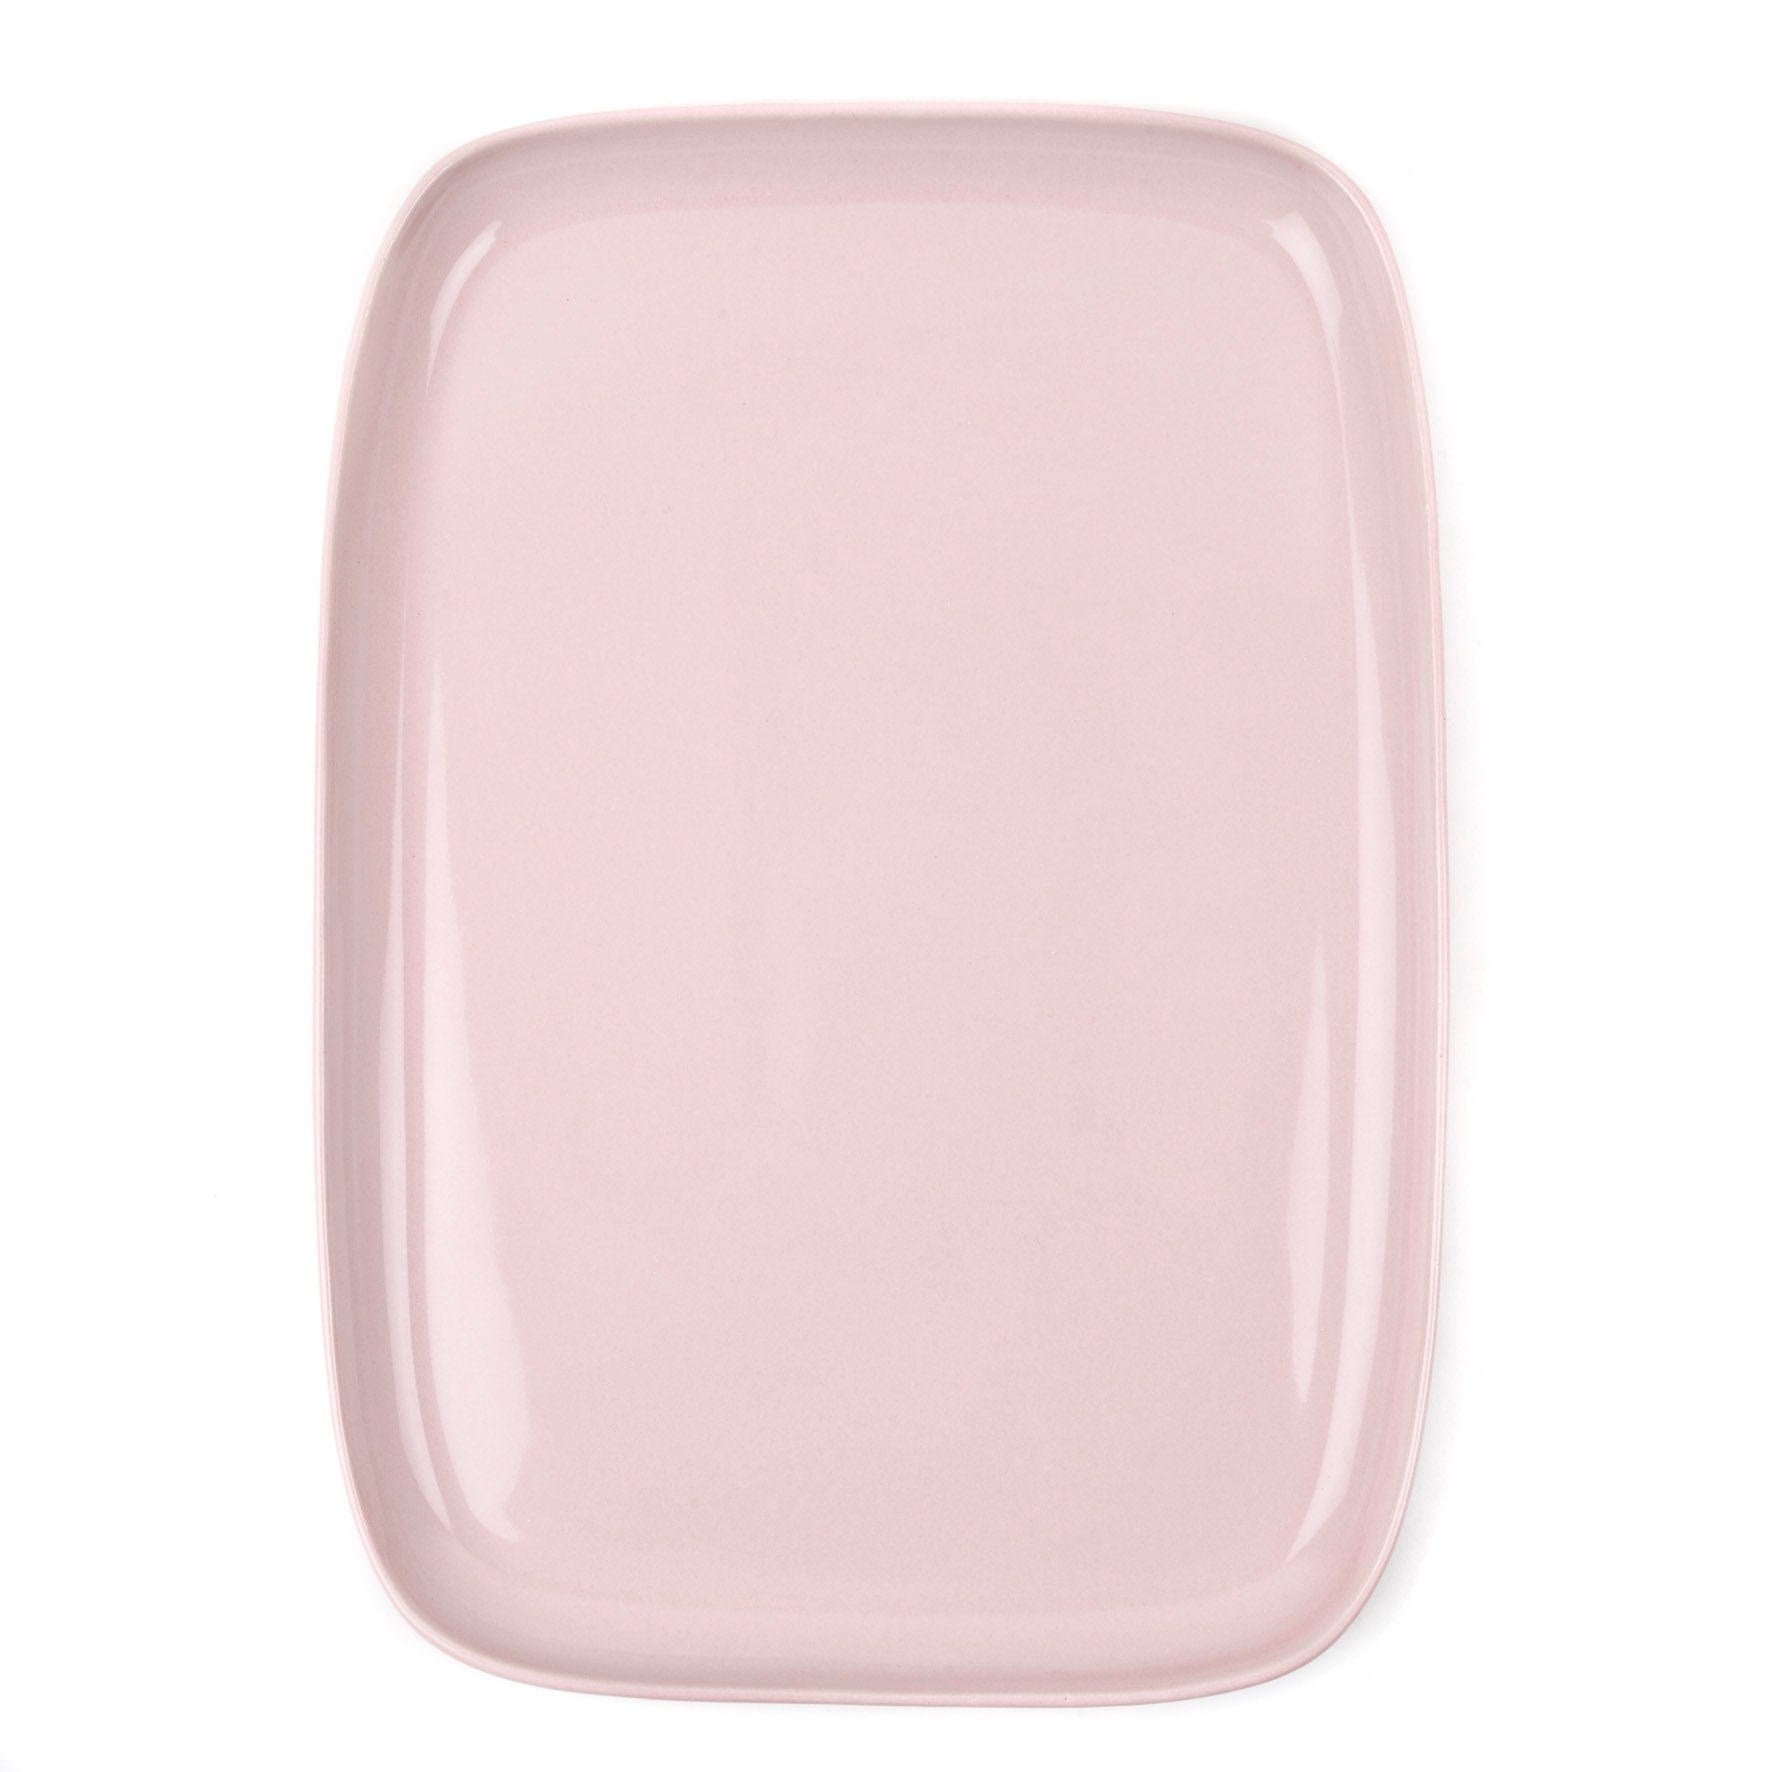 Pale Pink Large Rectangular Ceramic Platter